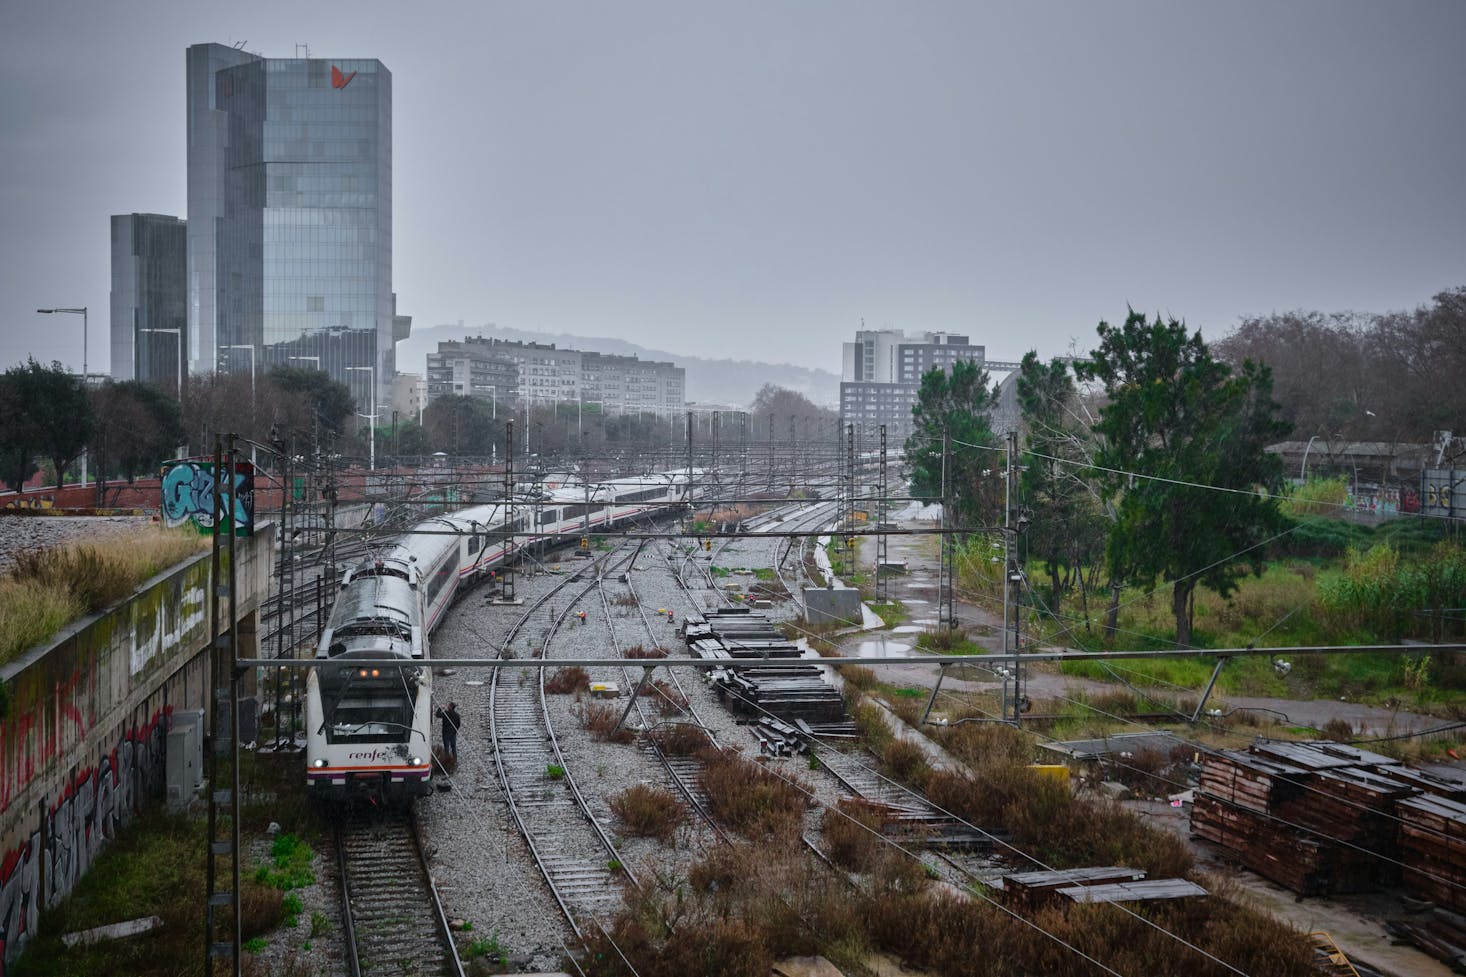 Stazione ferroviaria di Barcellona in una giornata di pioggia.